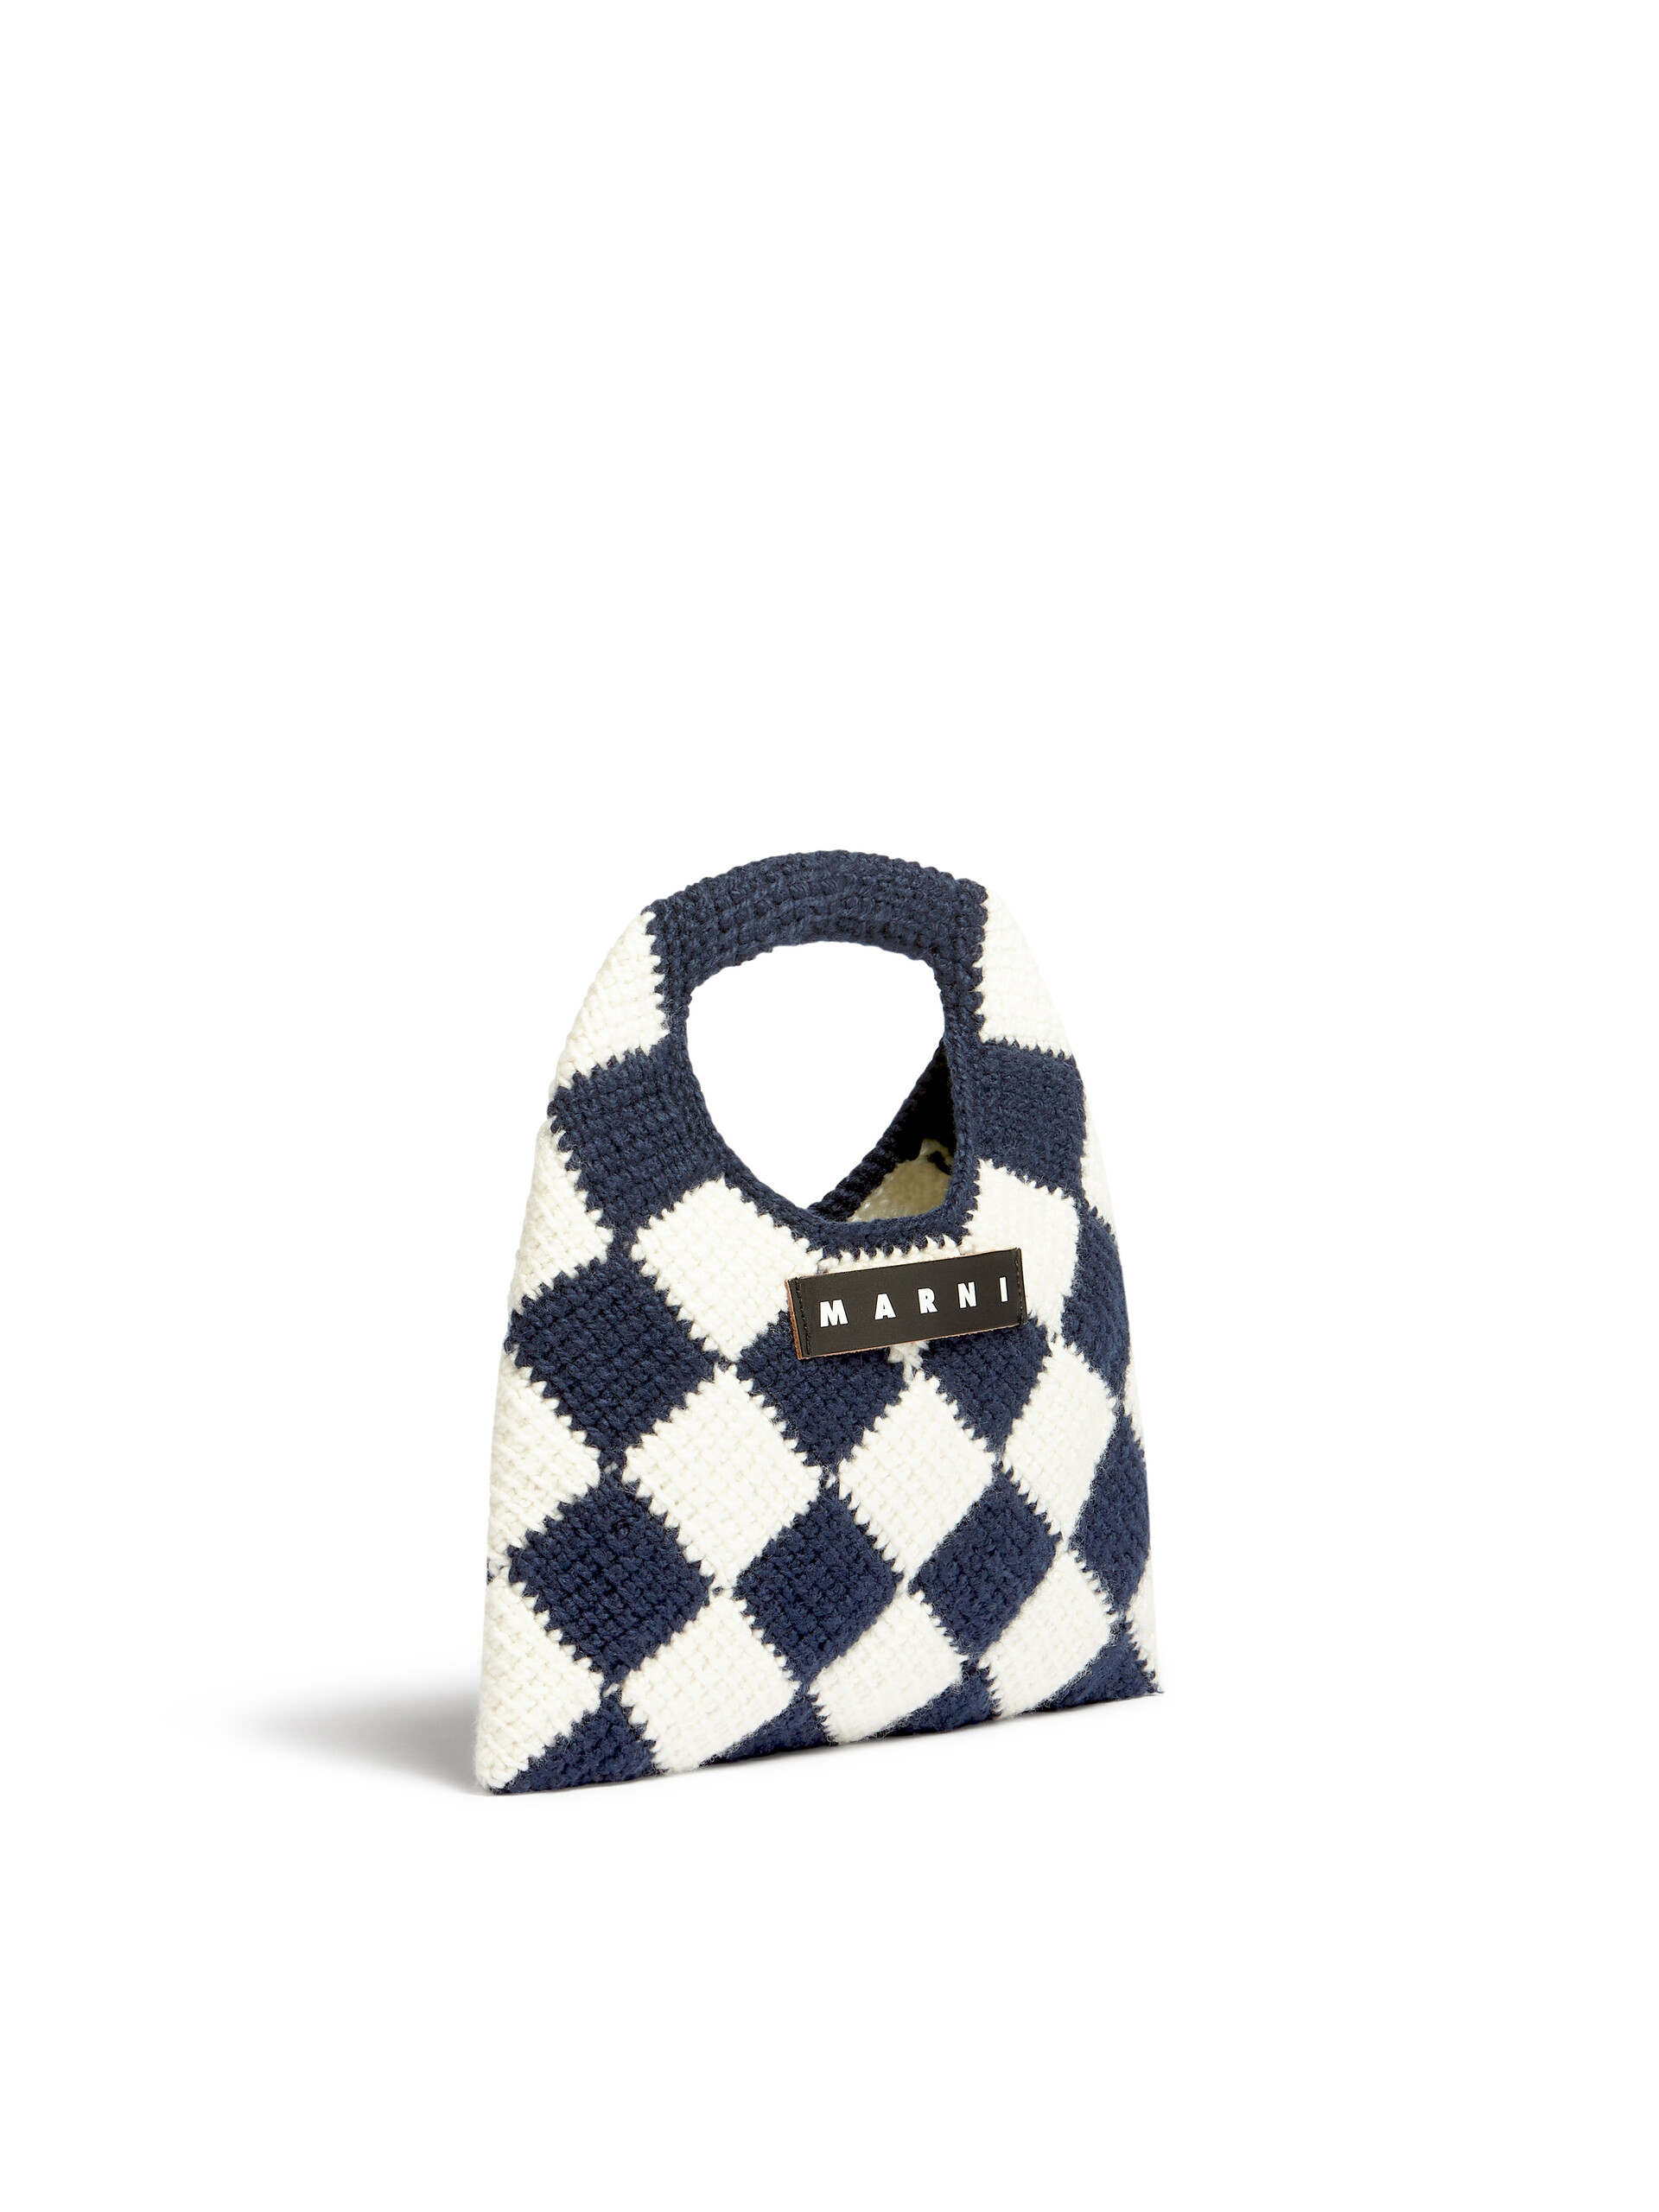 Bolso mediano MARNI MARKET DIAMOND de lana técnica azul y marrón - Bolsos - Image 2